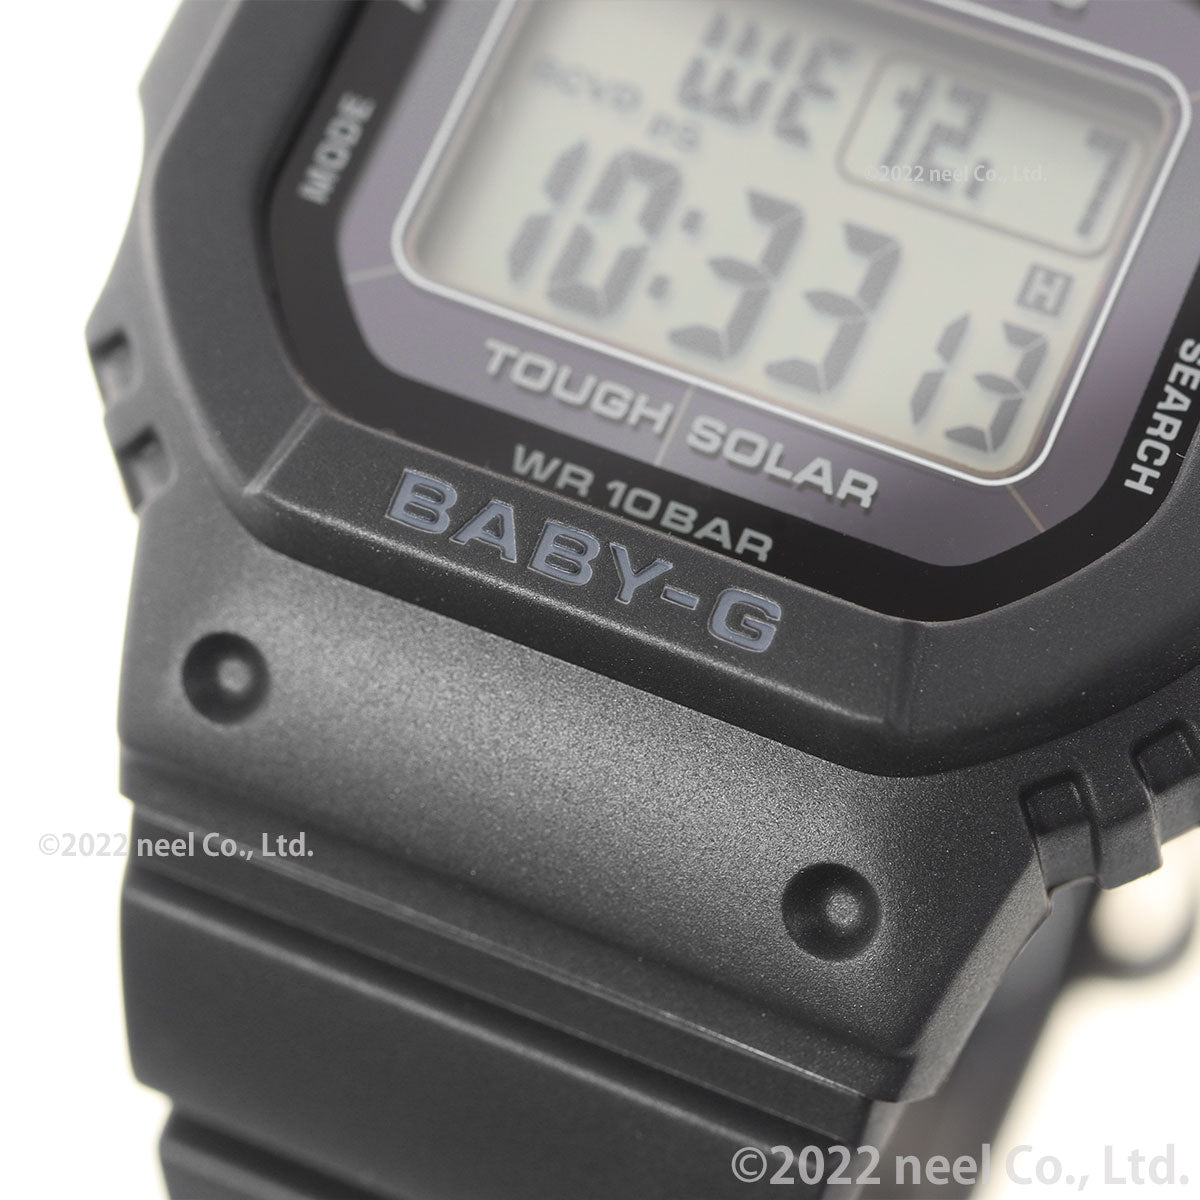 BABY-G カシオ ベビーG レディース 電波 ソーラー 腕時計 タフソーラー オールブラック BGD-5650-1JF